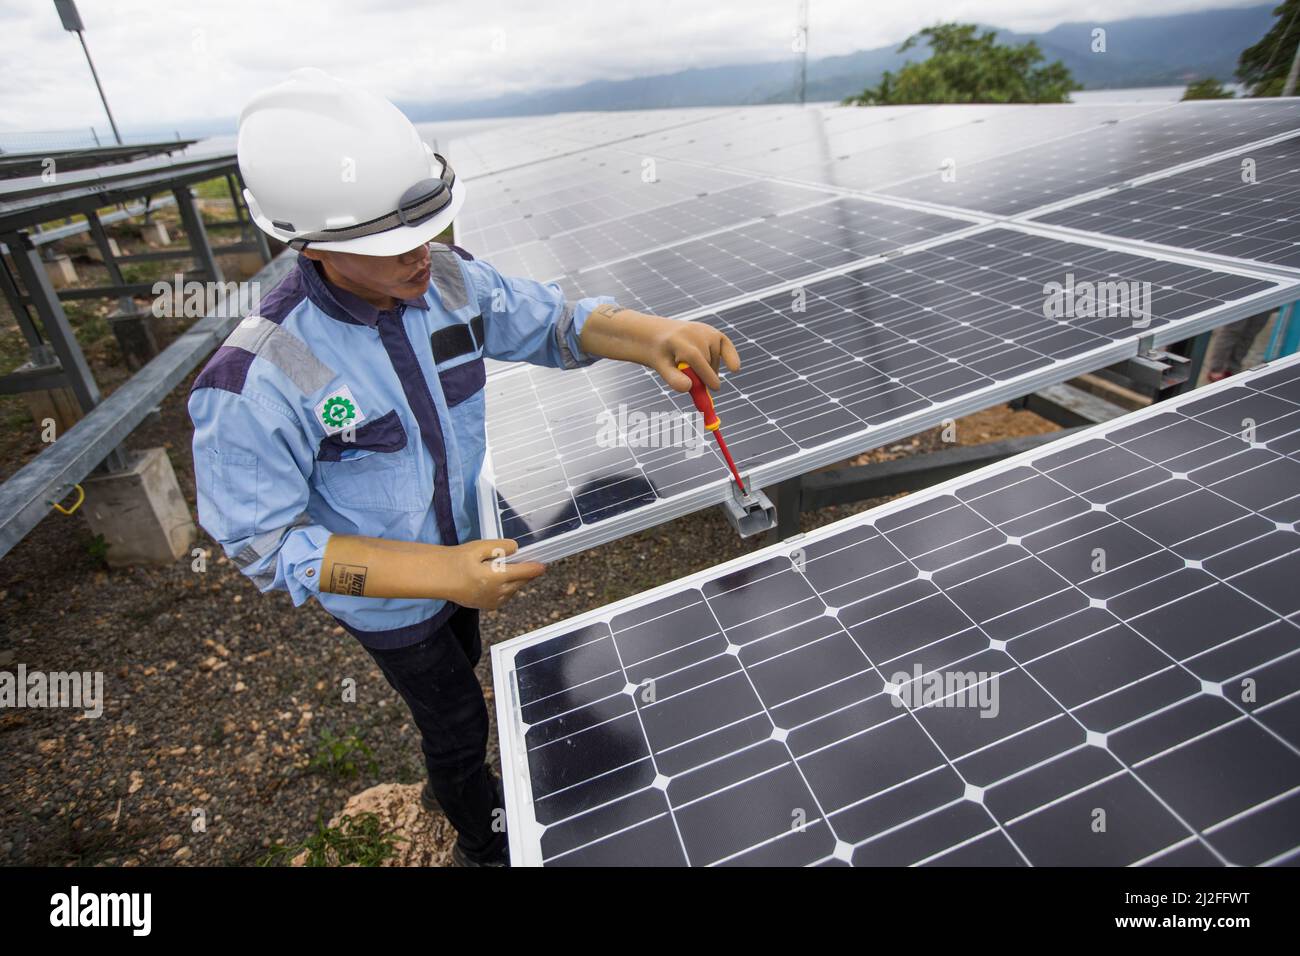 Aldi (25 años), técnico eléctrico subalterno, inspecciona y mantiene paneles solares en la isla de Karampuang, Indonesia, que fueron instalados como parte del Gree Foto de stock